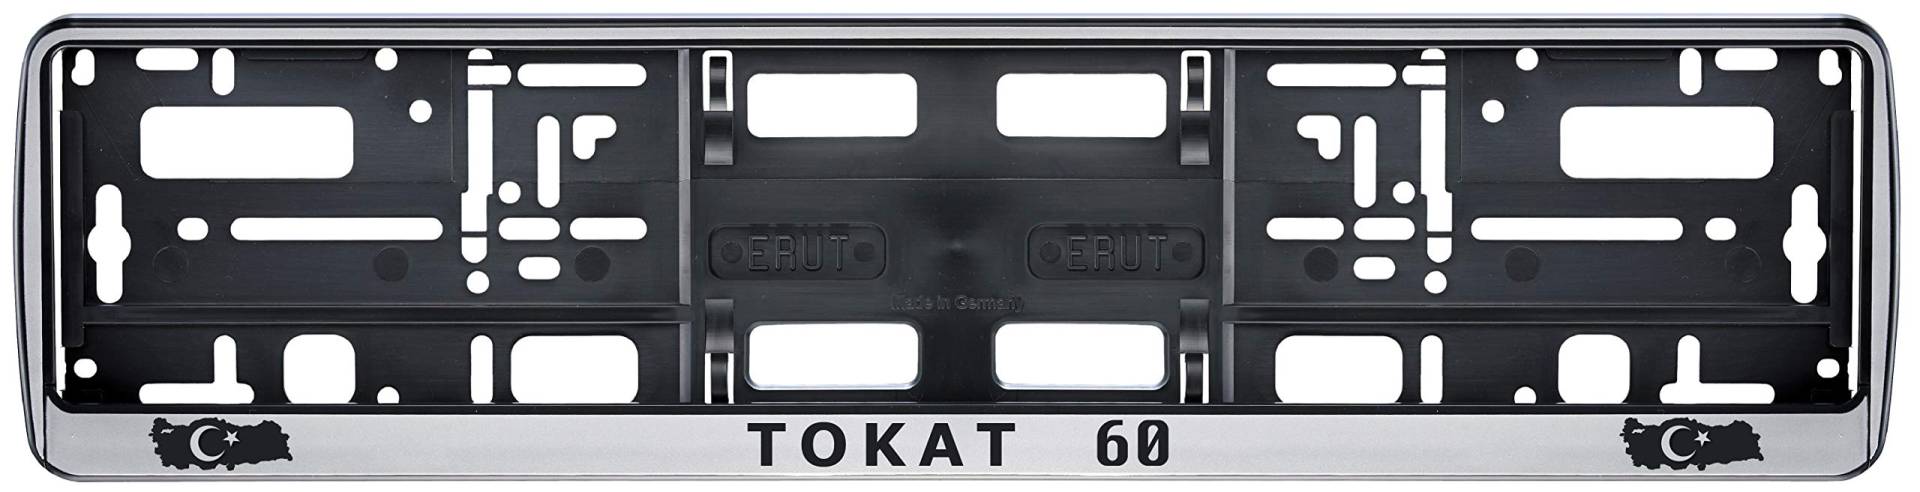 Auto Kennzeichenhalter in der Farbe Silber/Schwarz Nummernschildhalterung Auto, Nummernschildhalter Türkei Flagge 60 Tokat 2 Stück von aina